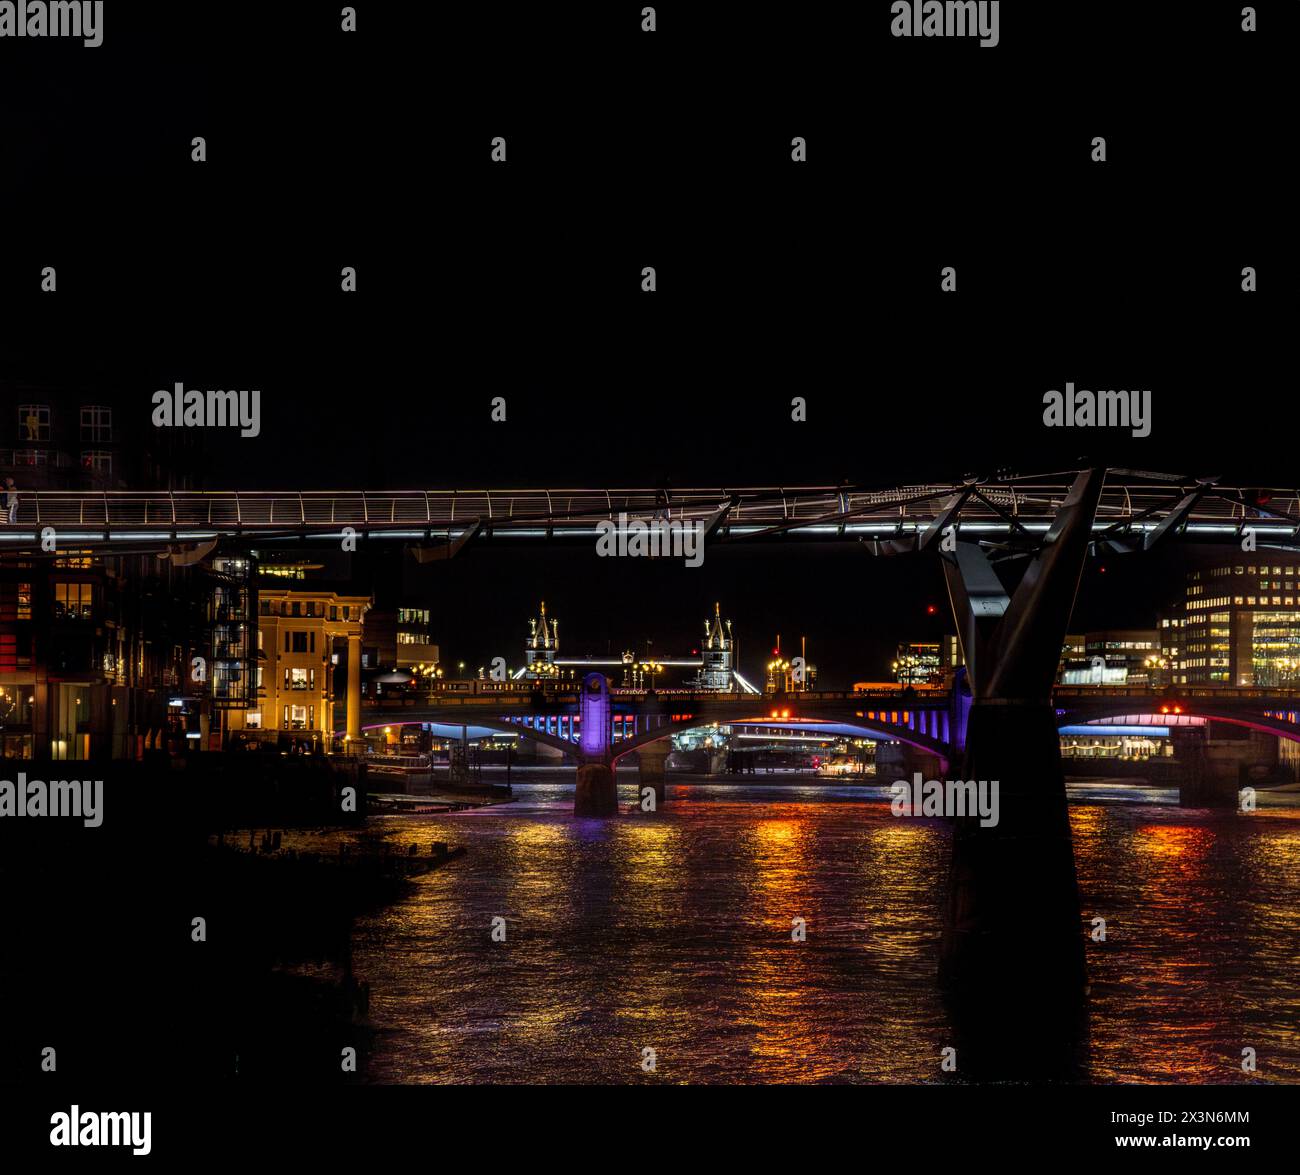 Vue frontale depuis la Tamise du Millennium Bridge, Blackfriars Bridge et Tower Bridge la nuit, avec leurs lumières reflétées dans la rive Banque D'Images